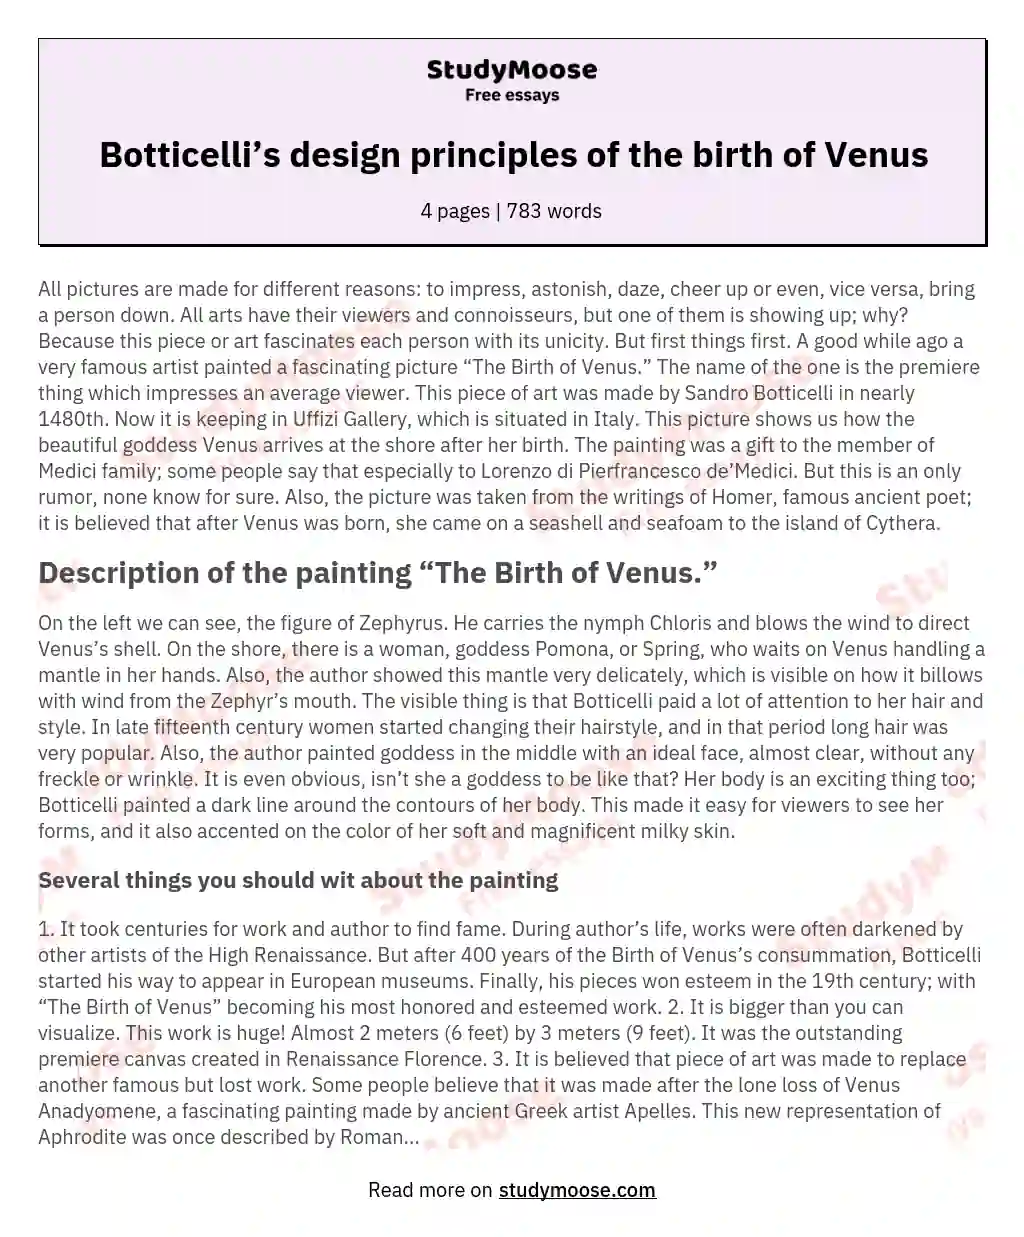 Botticelli’s design principles of the birth of Venus essay